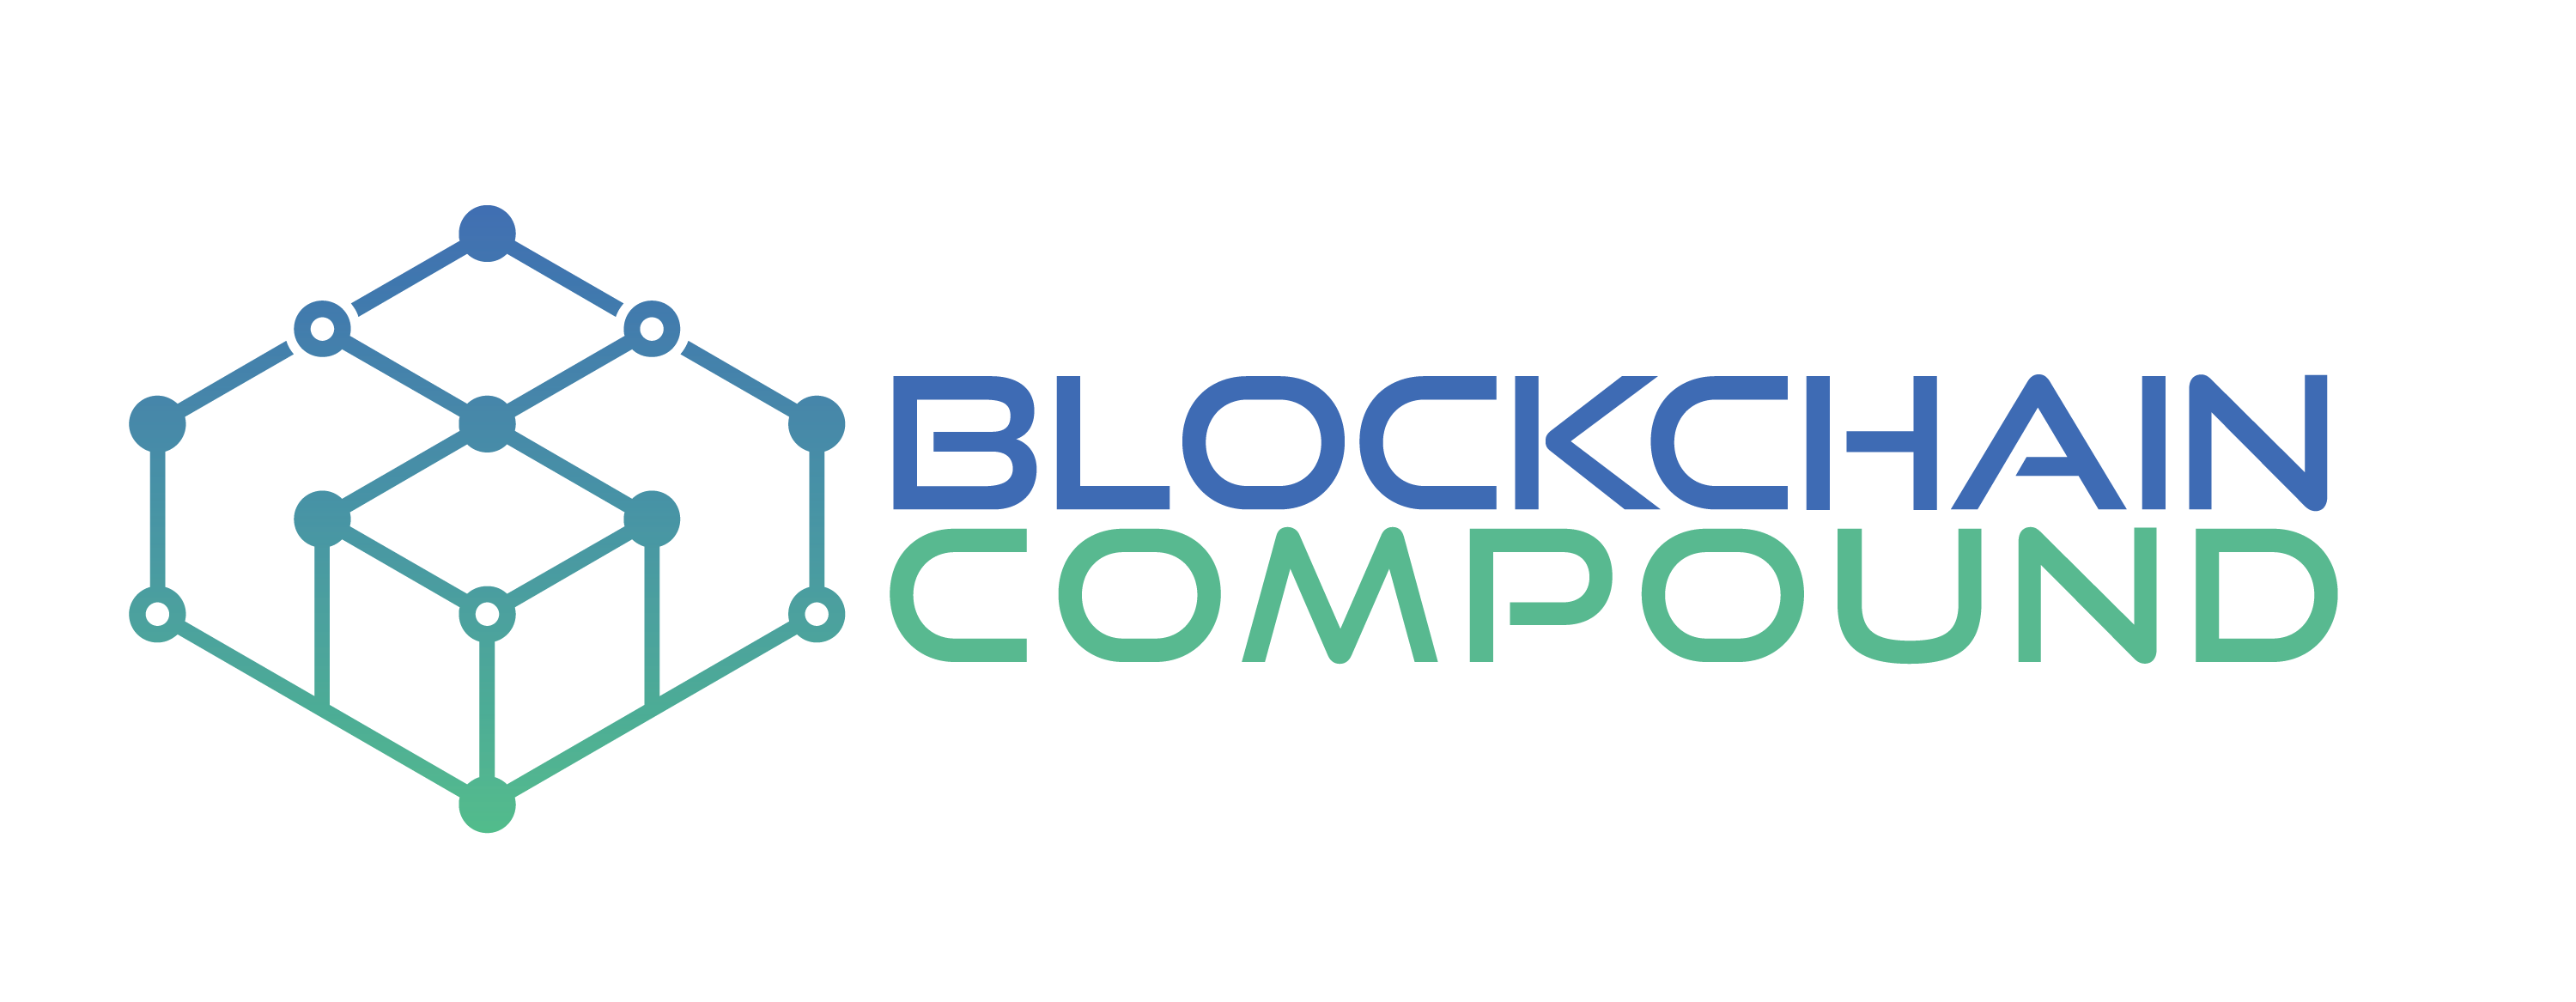 Blockchain Compound